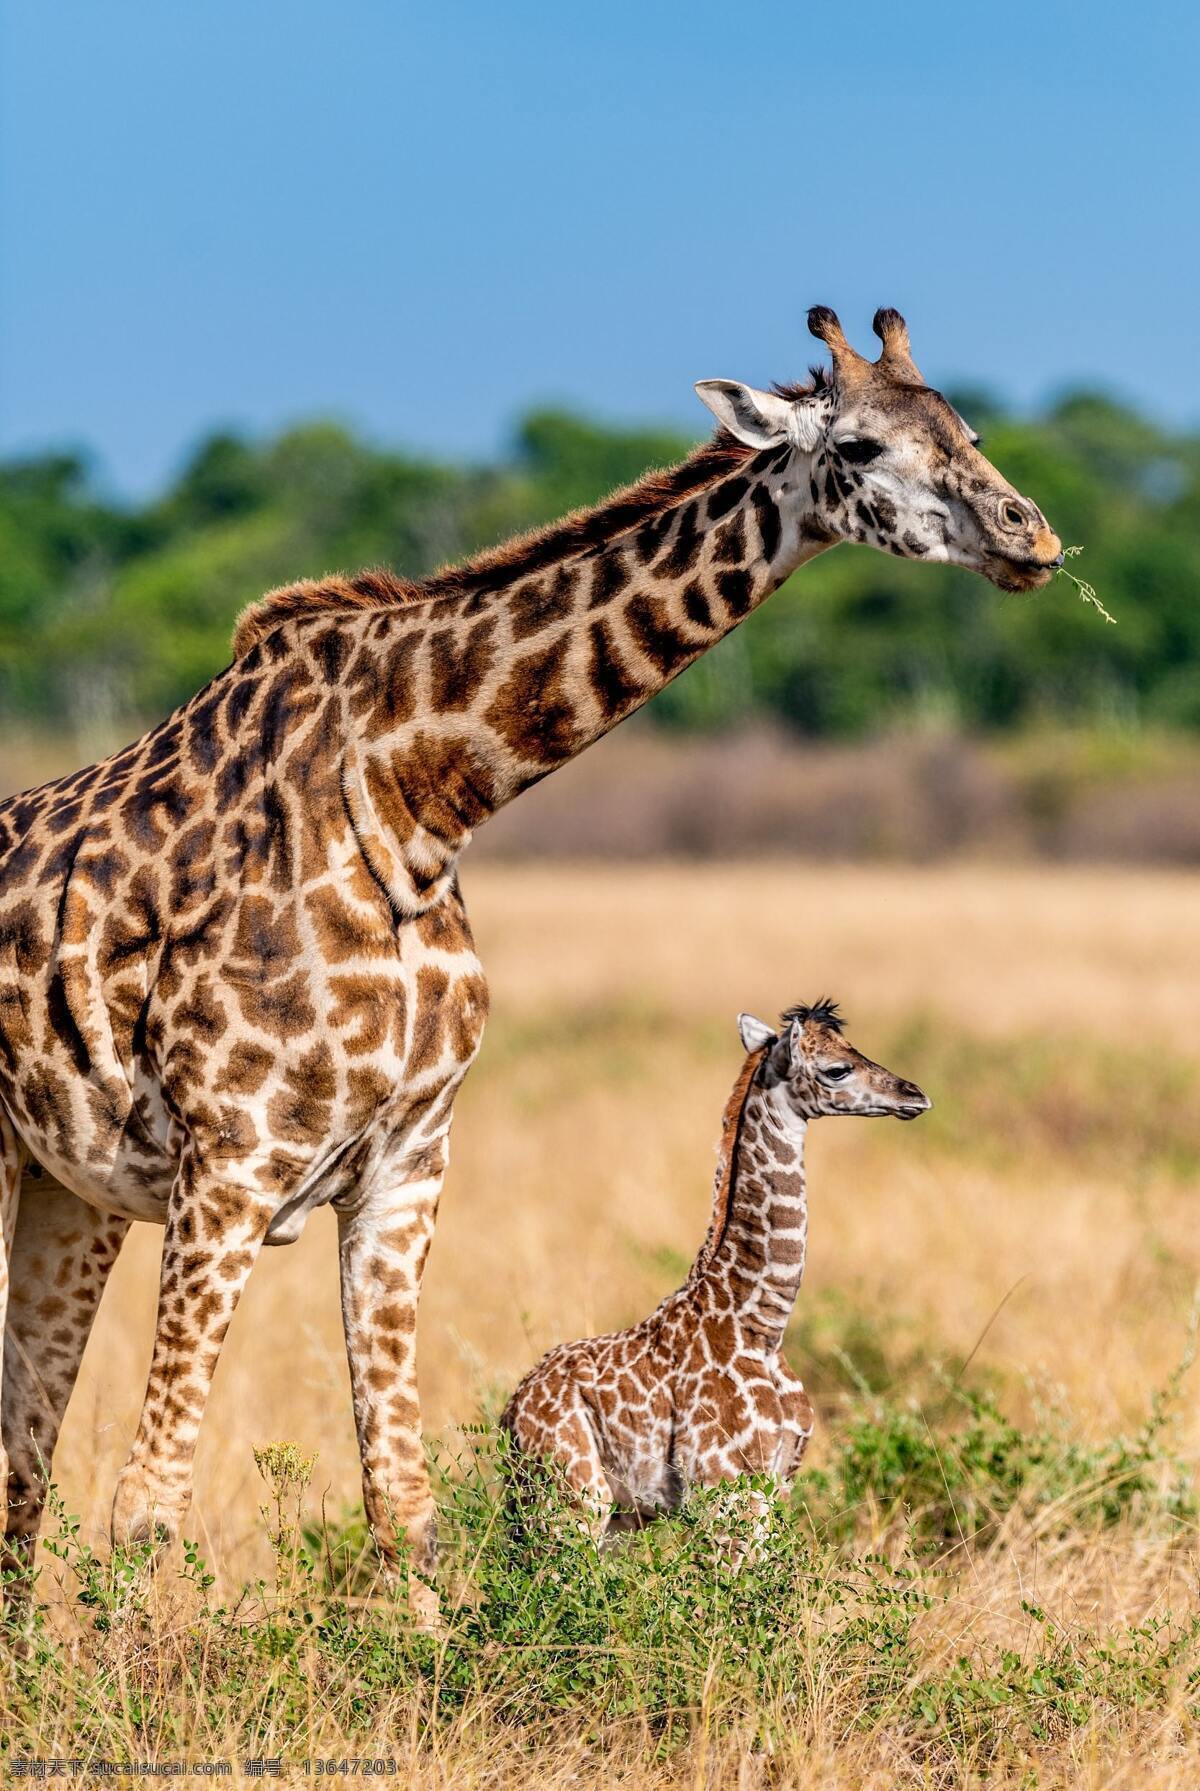 长颈鹿图片 长颈鹿 鹿 野生动物 动物 非洲动物 生物世界